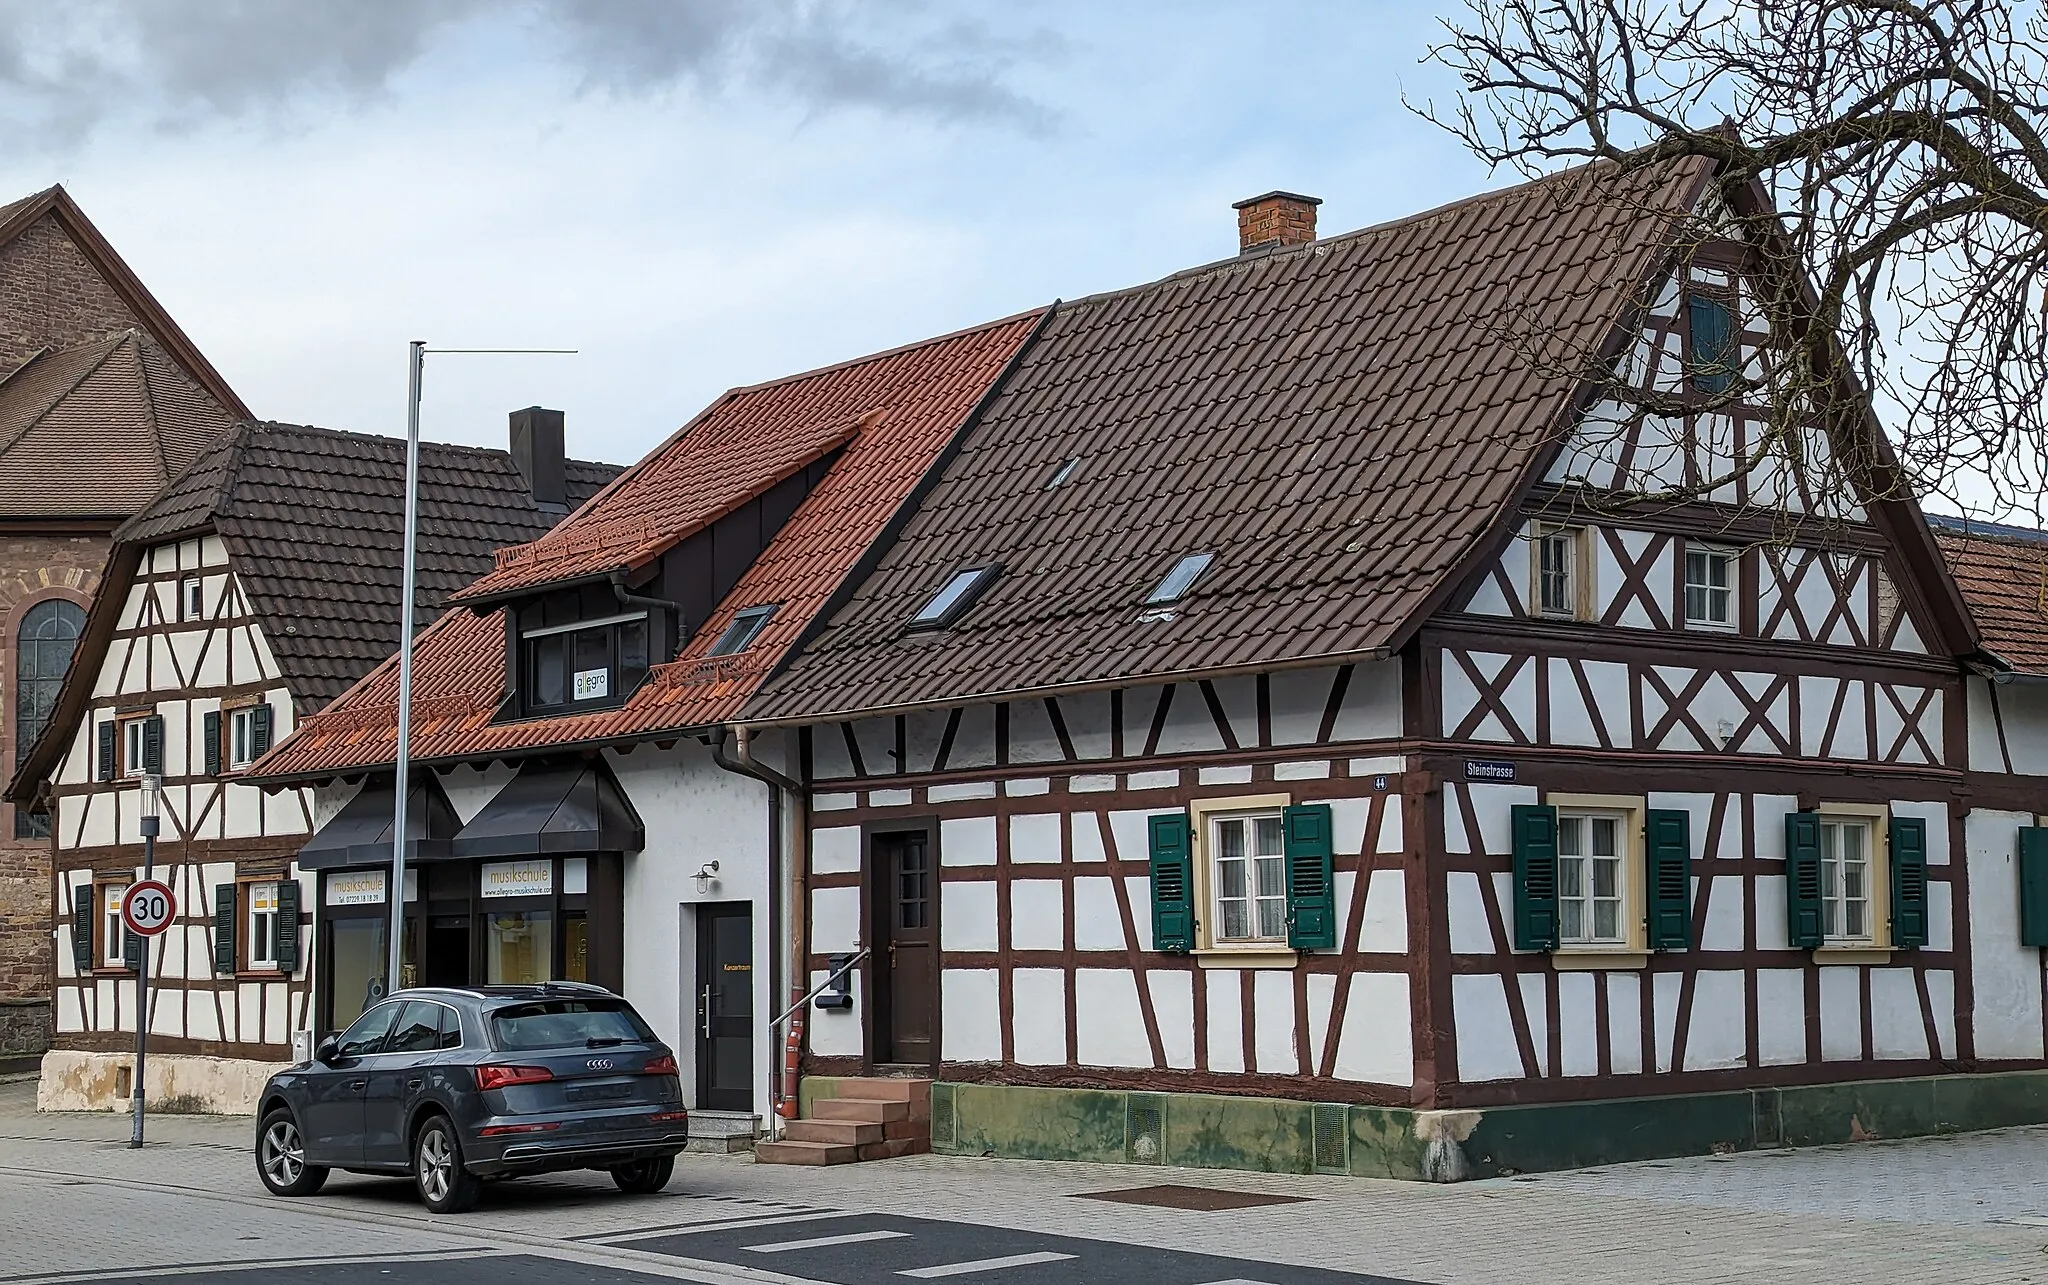 Image of Karlsruhe